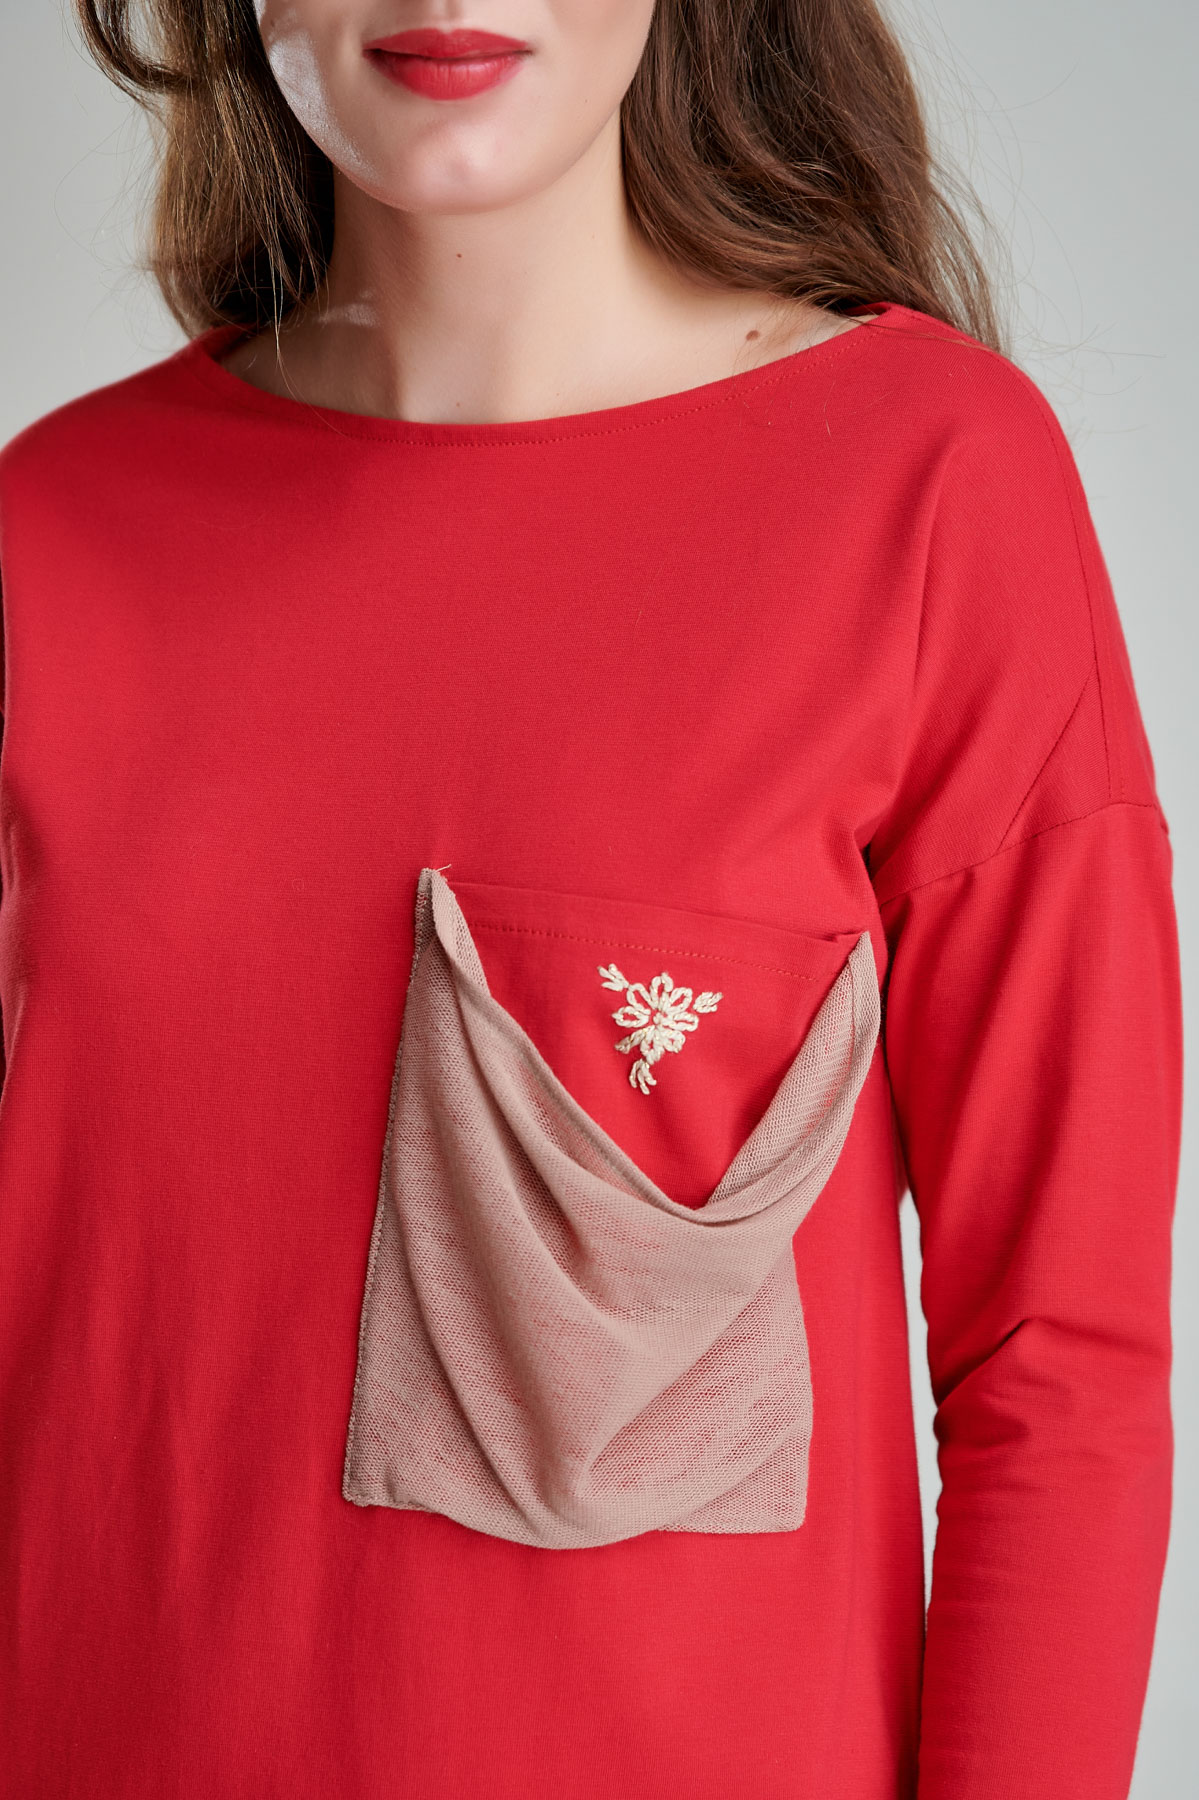 Rochie VALENTA casual din jerse rosu. Materiale naturale, design unicat, cu broderie si aplicatii handmade